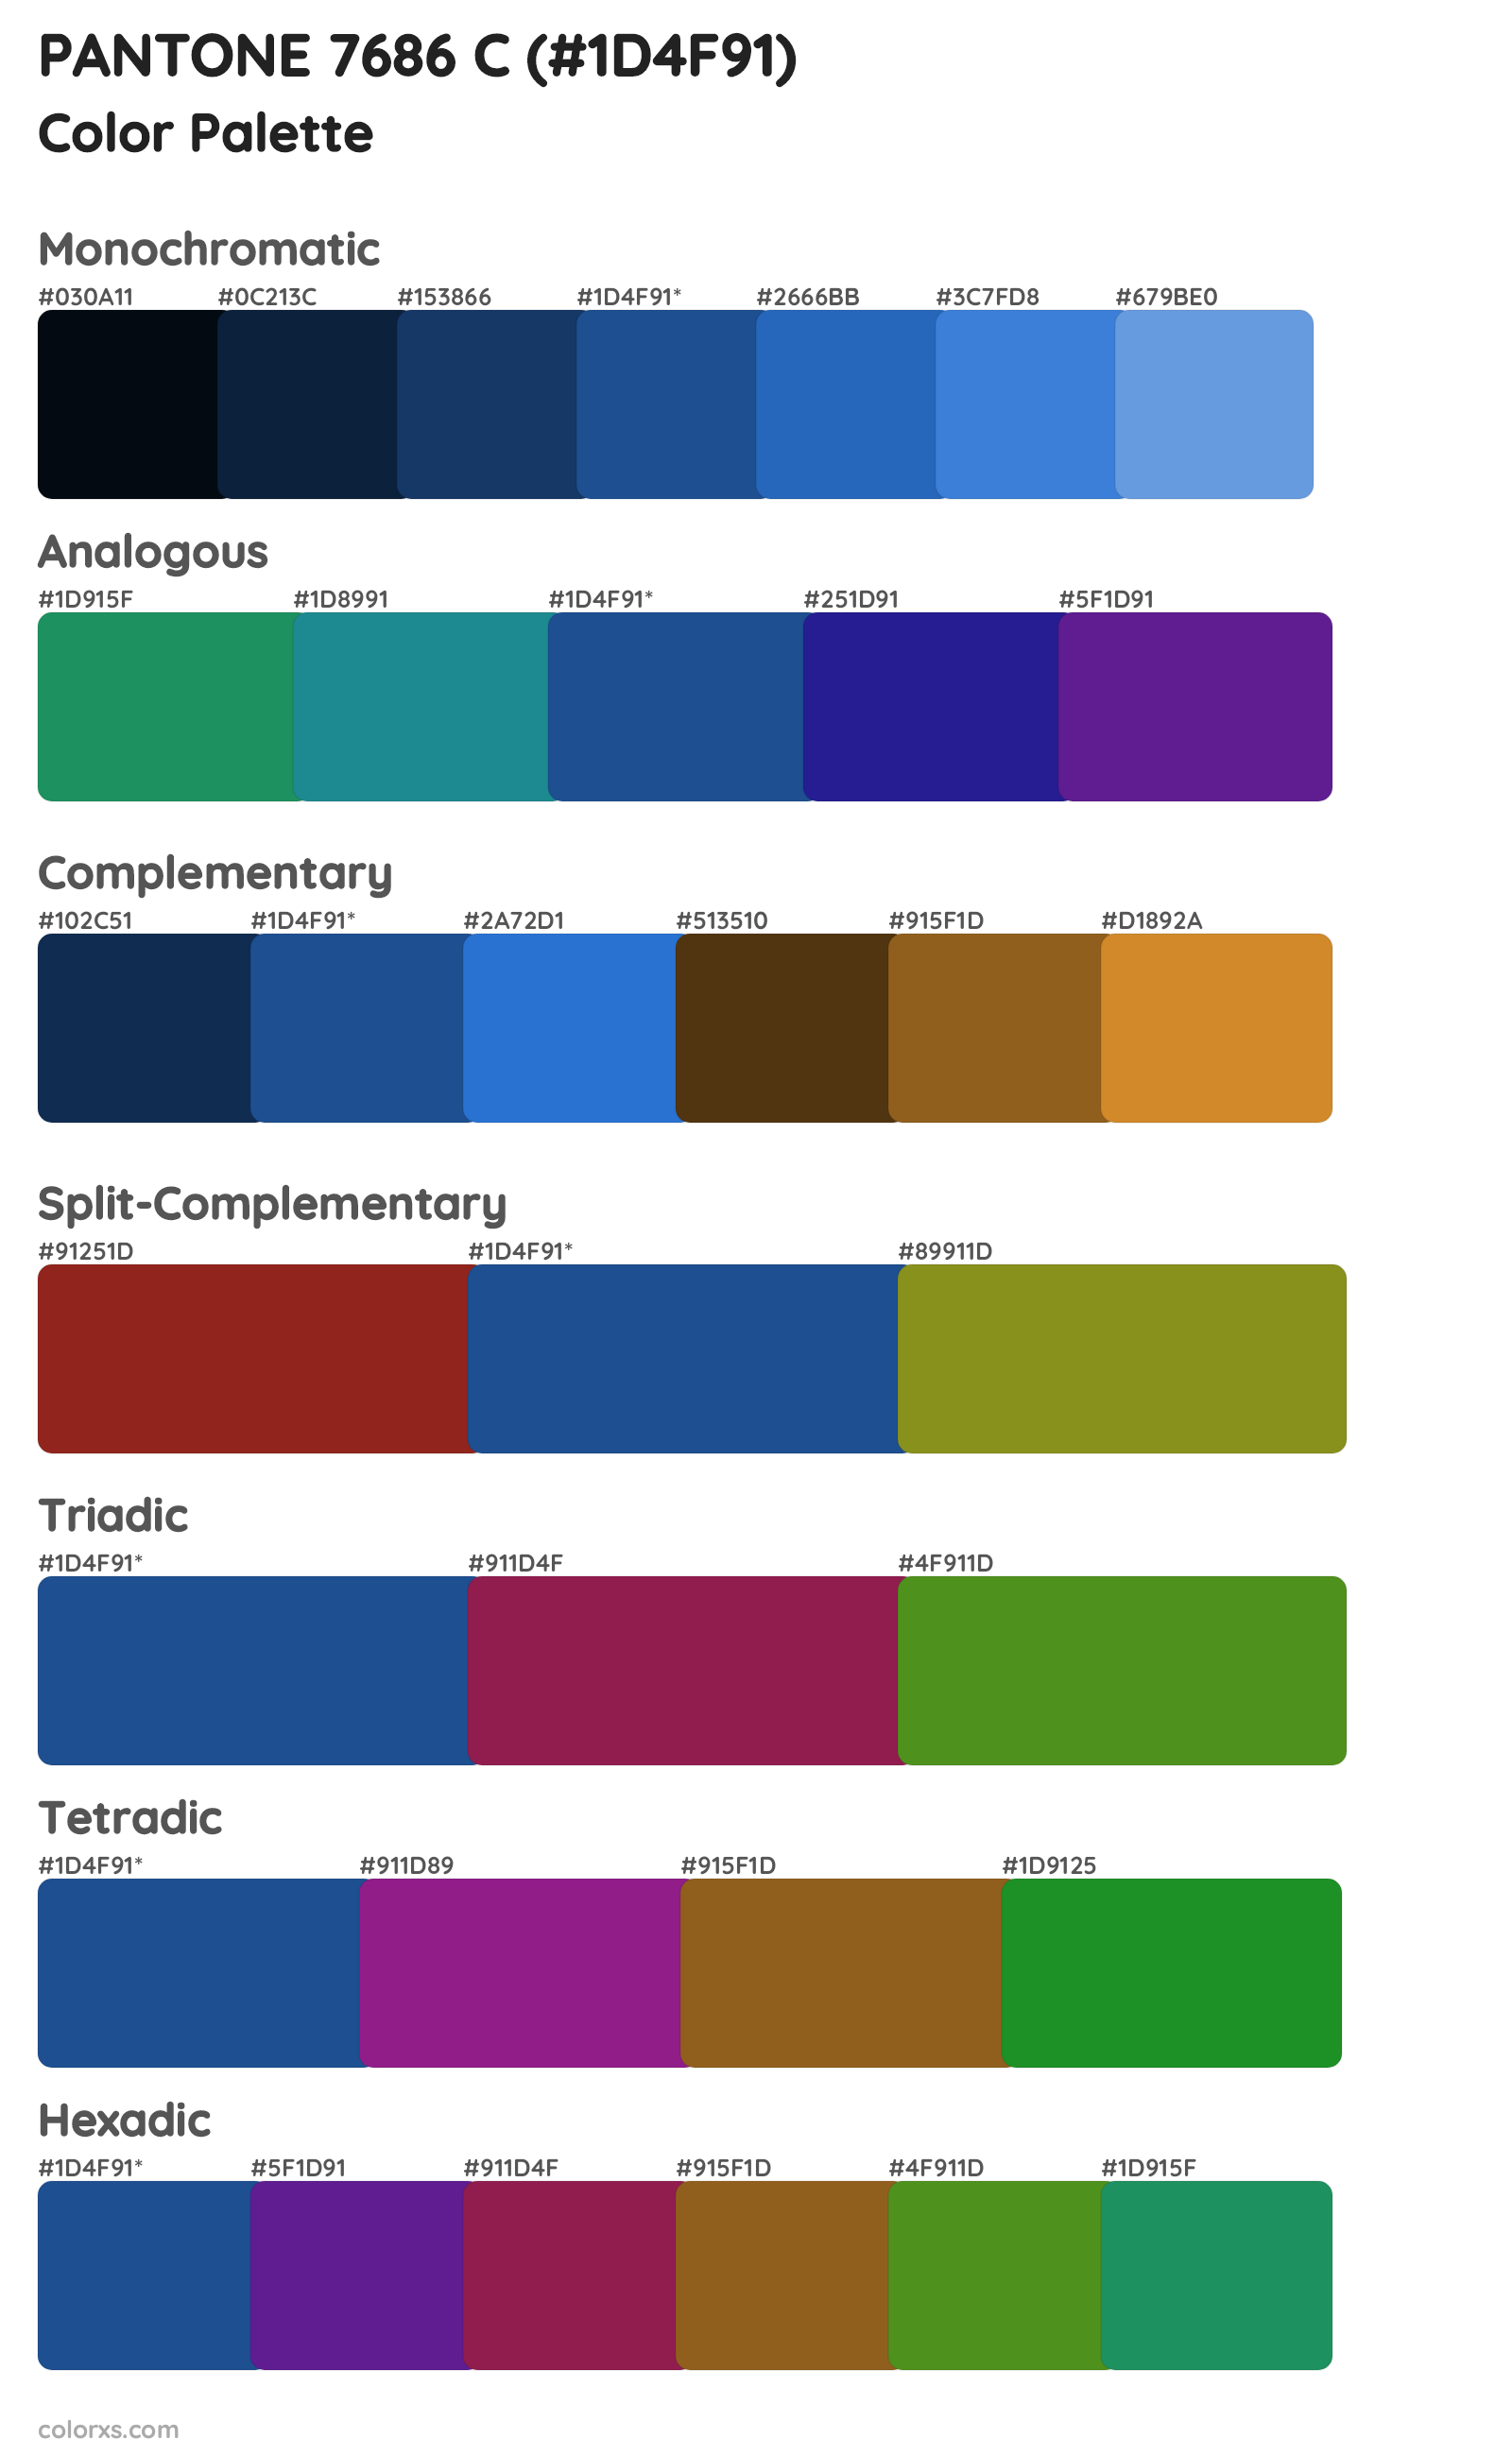 PANTONE 7686 C Color Scheme Palettes